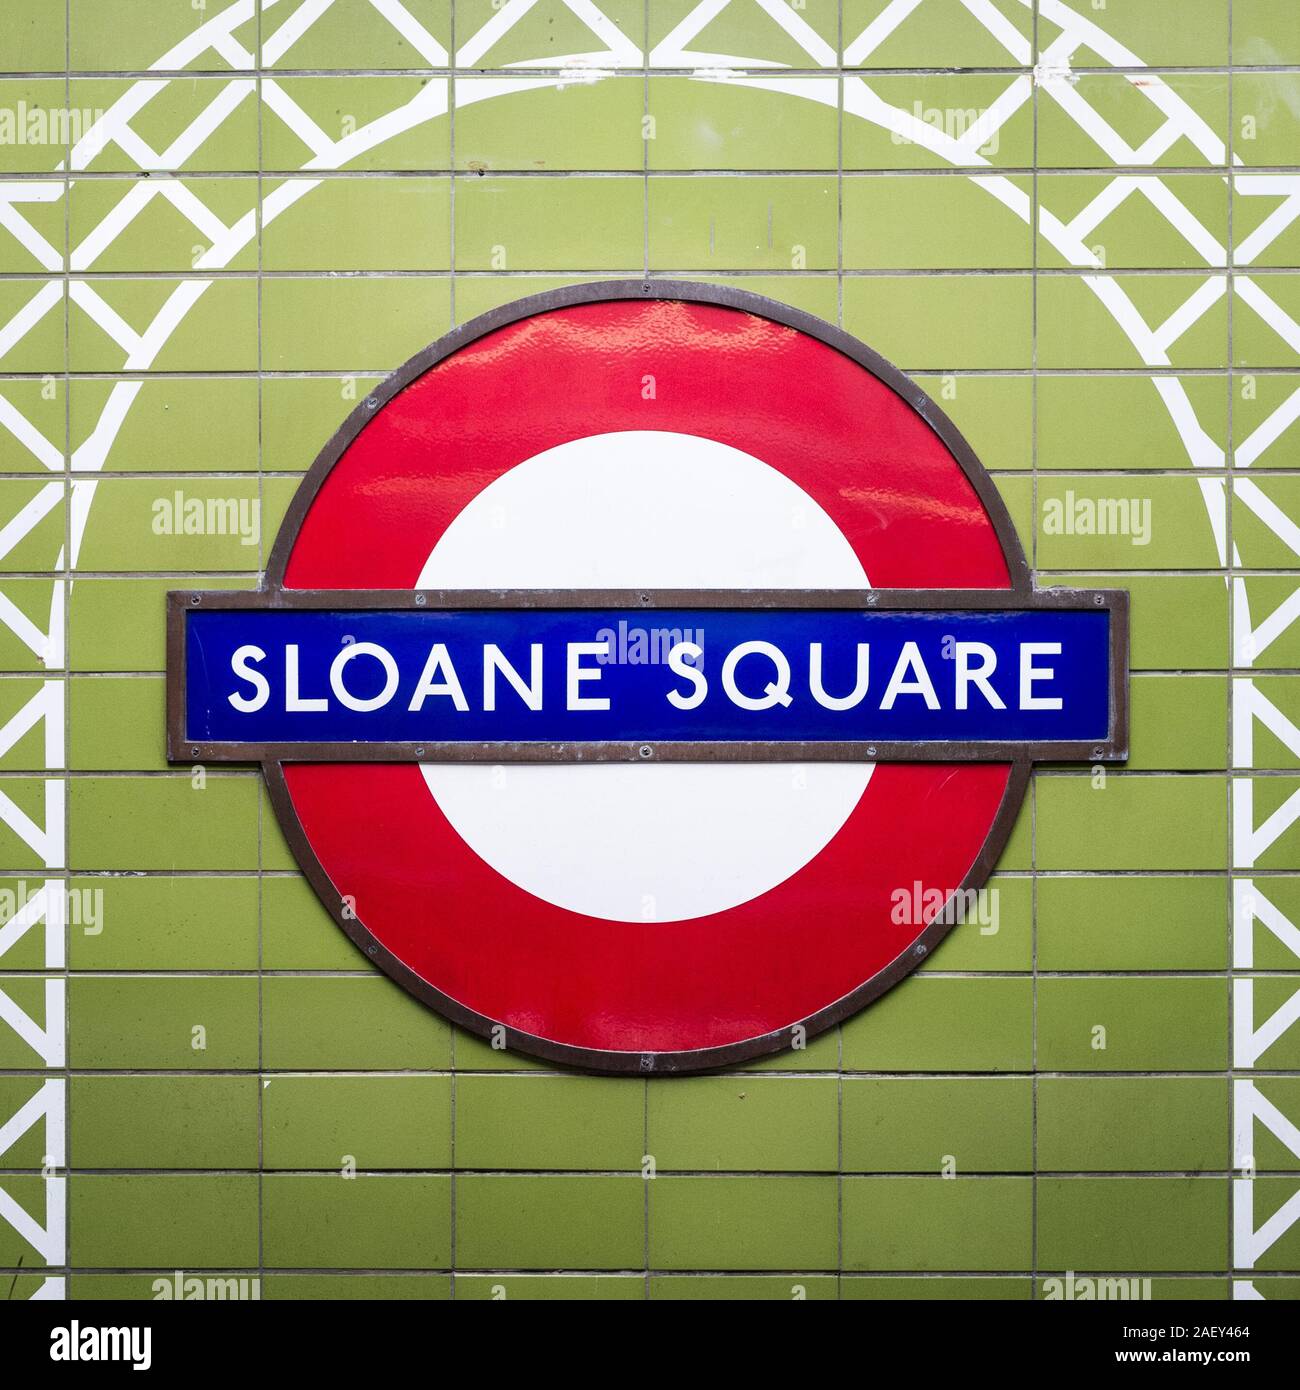 La stazione metropolitana di Sloane Square. Un segno della piattaforma per la stazione della metropolitana di Londra sulle linee Circle e District. Foto Stock